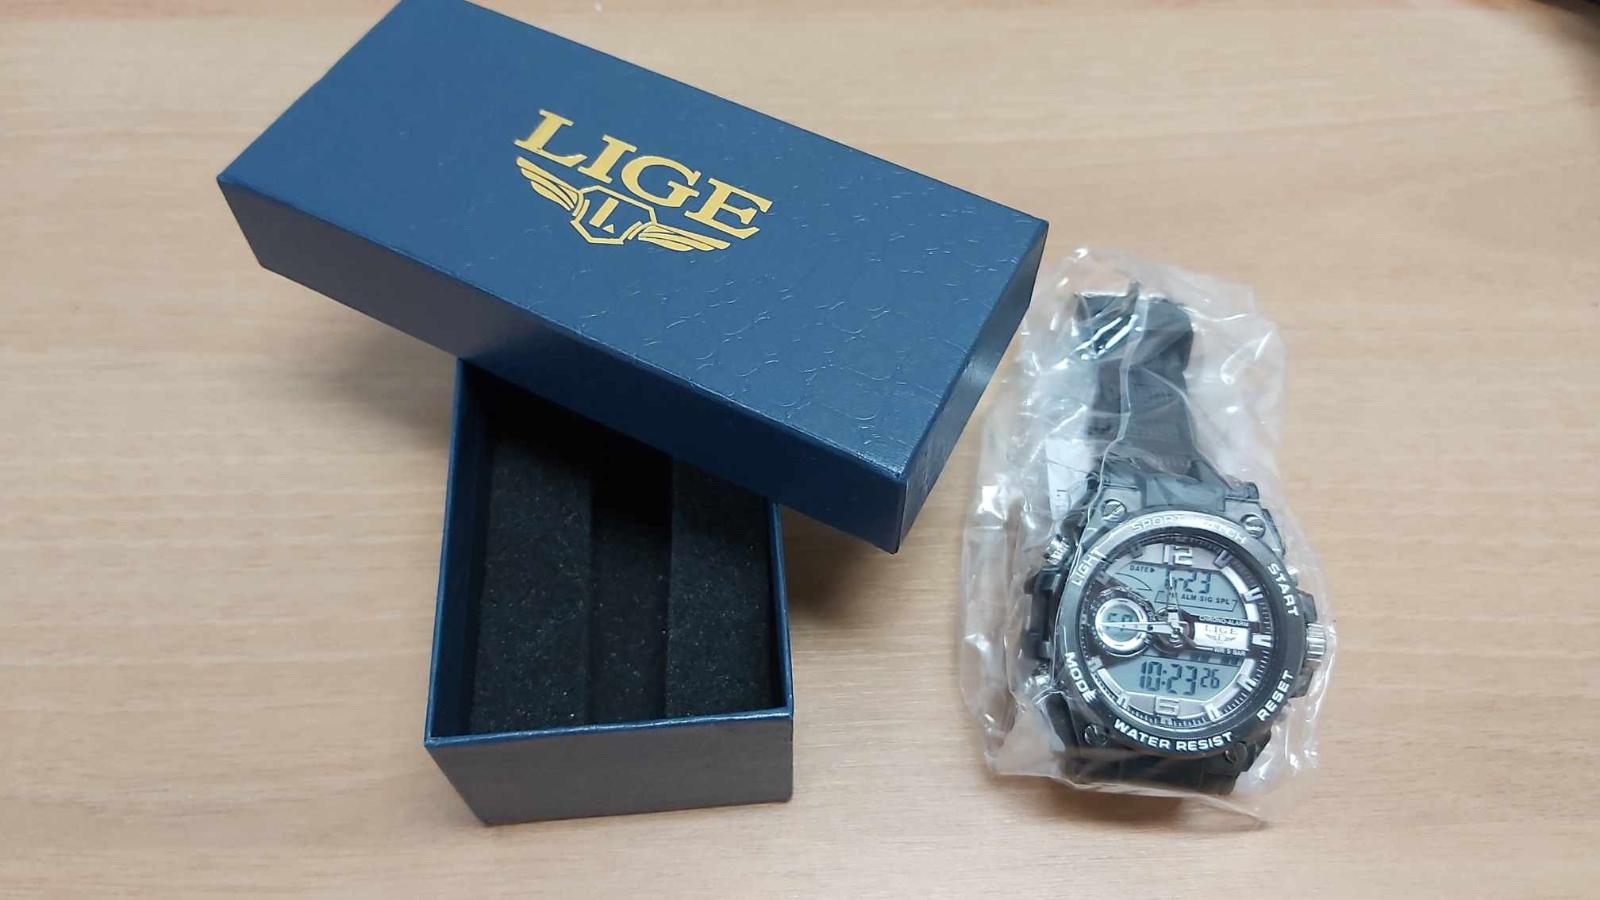 Digi+ručičkové hodinky LIGE MAN Black (darčeková sada) - 50M vodotesné - Šperky a hodinky